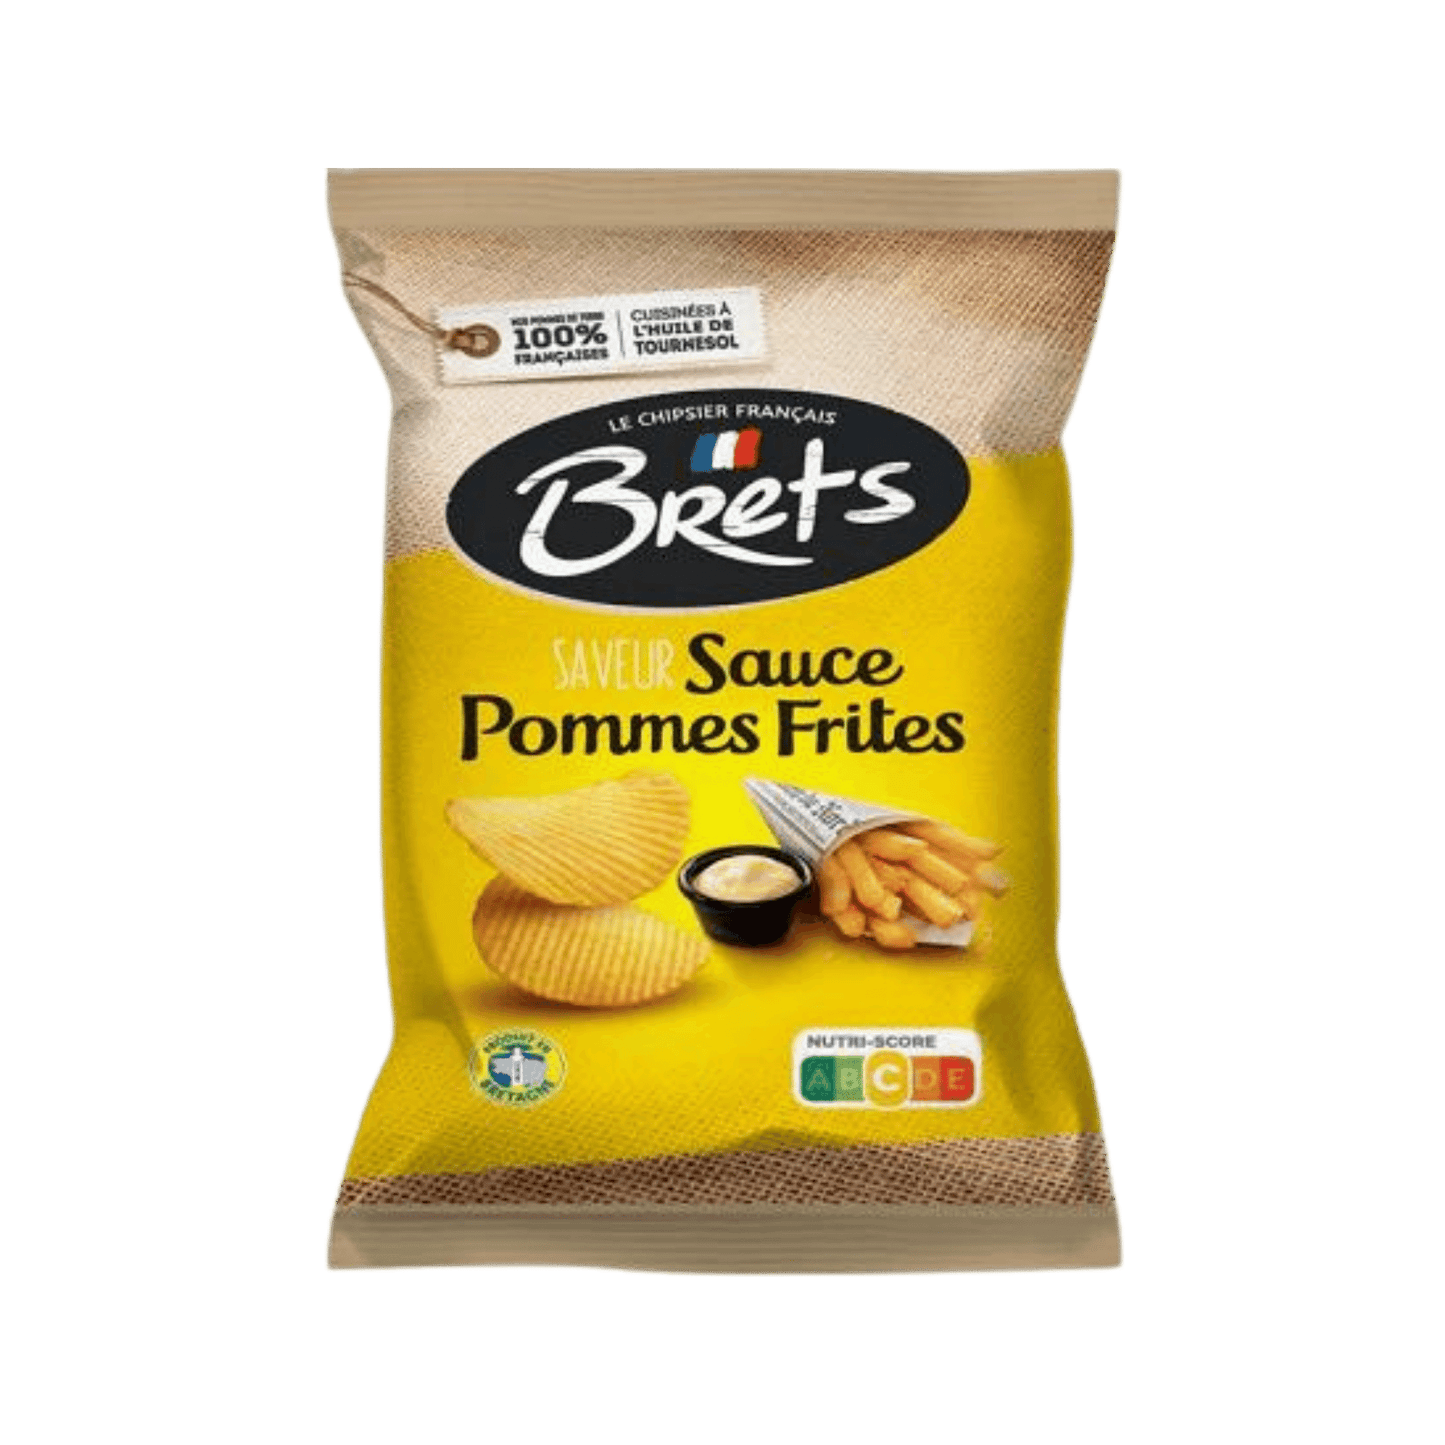 Bret's - Chips FR - Sauce Pommes Frites (10x125g)